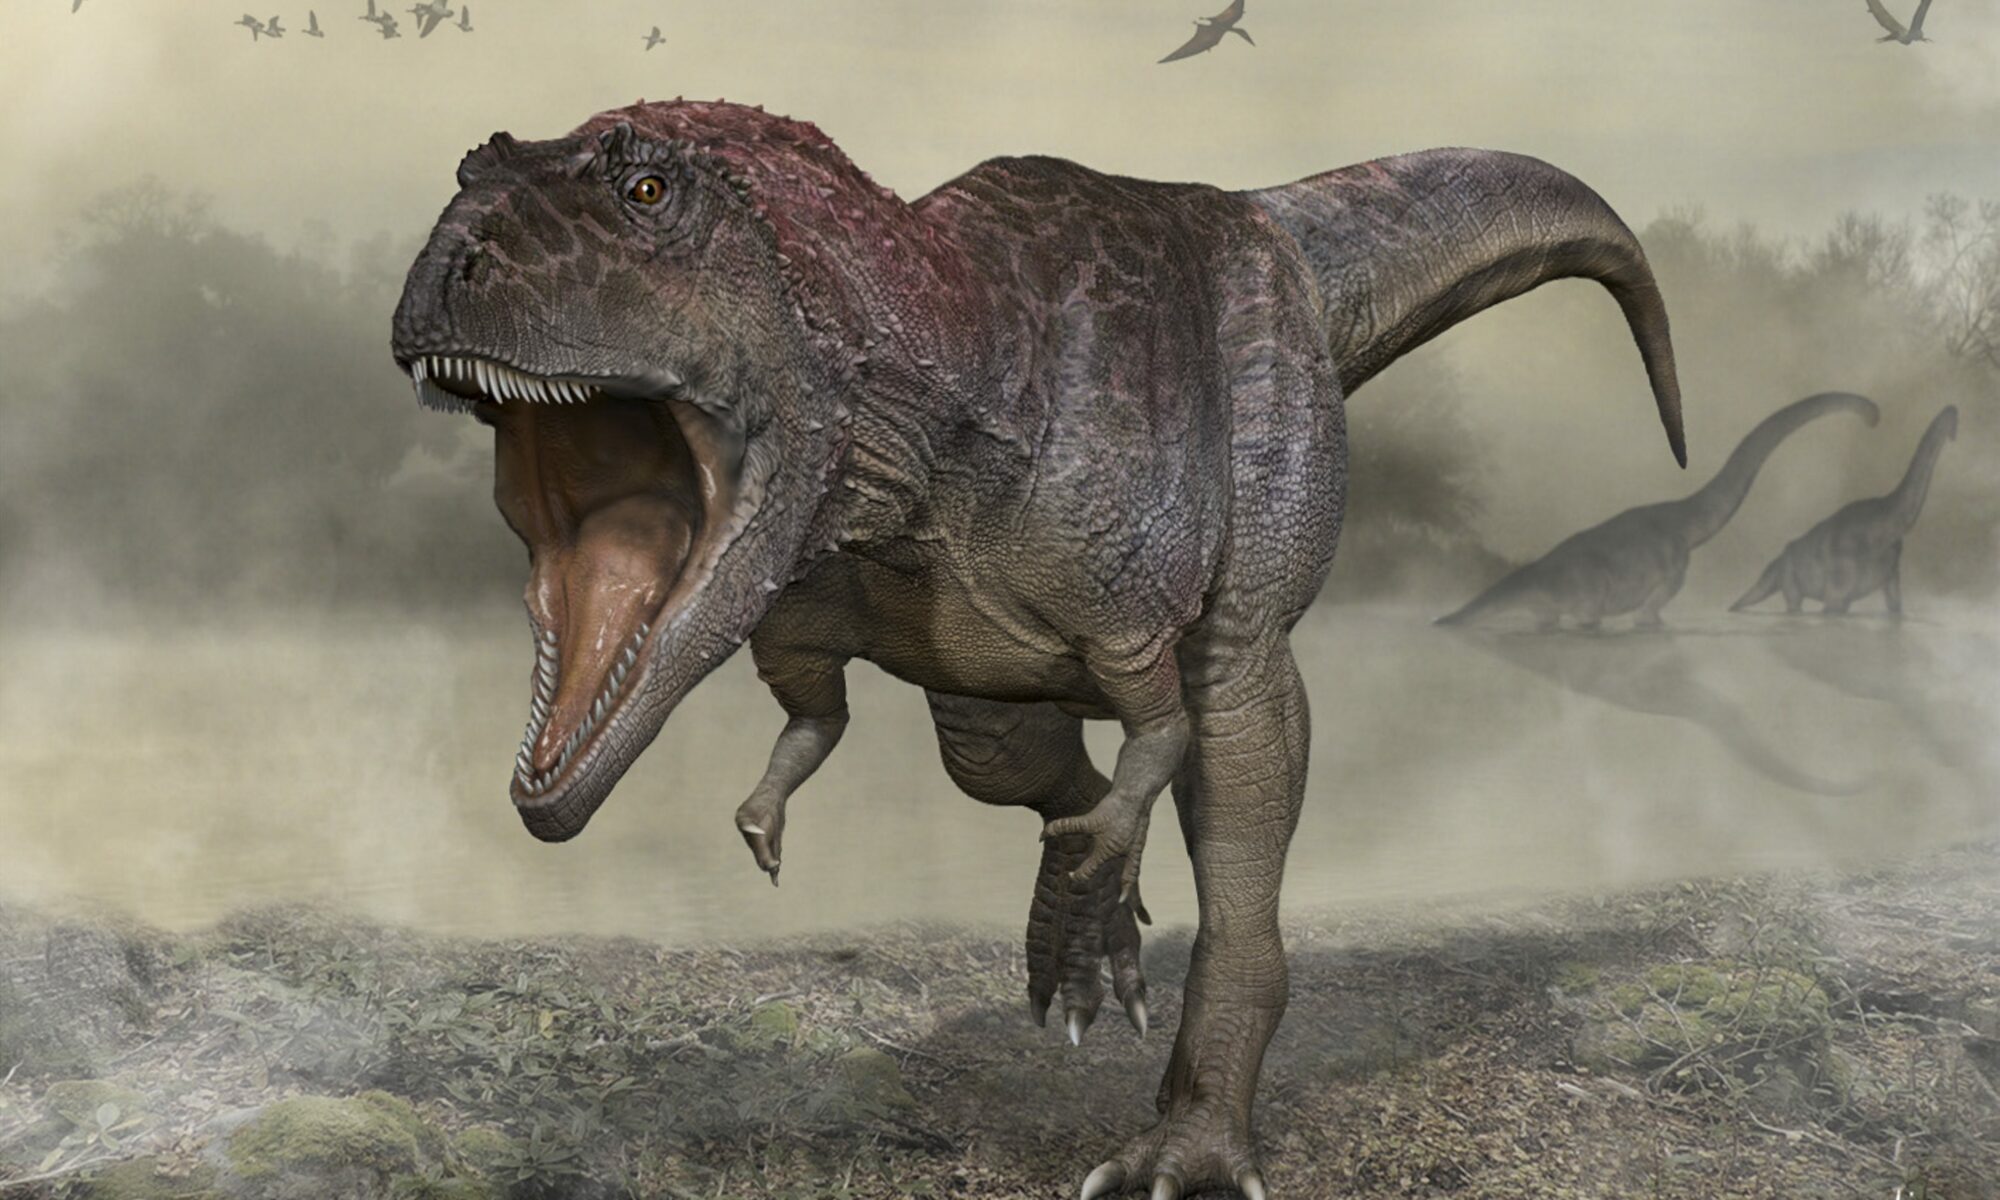 Descubierto nuevo dinosaurio gigante con brazos pequeños como el T. rex